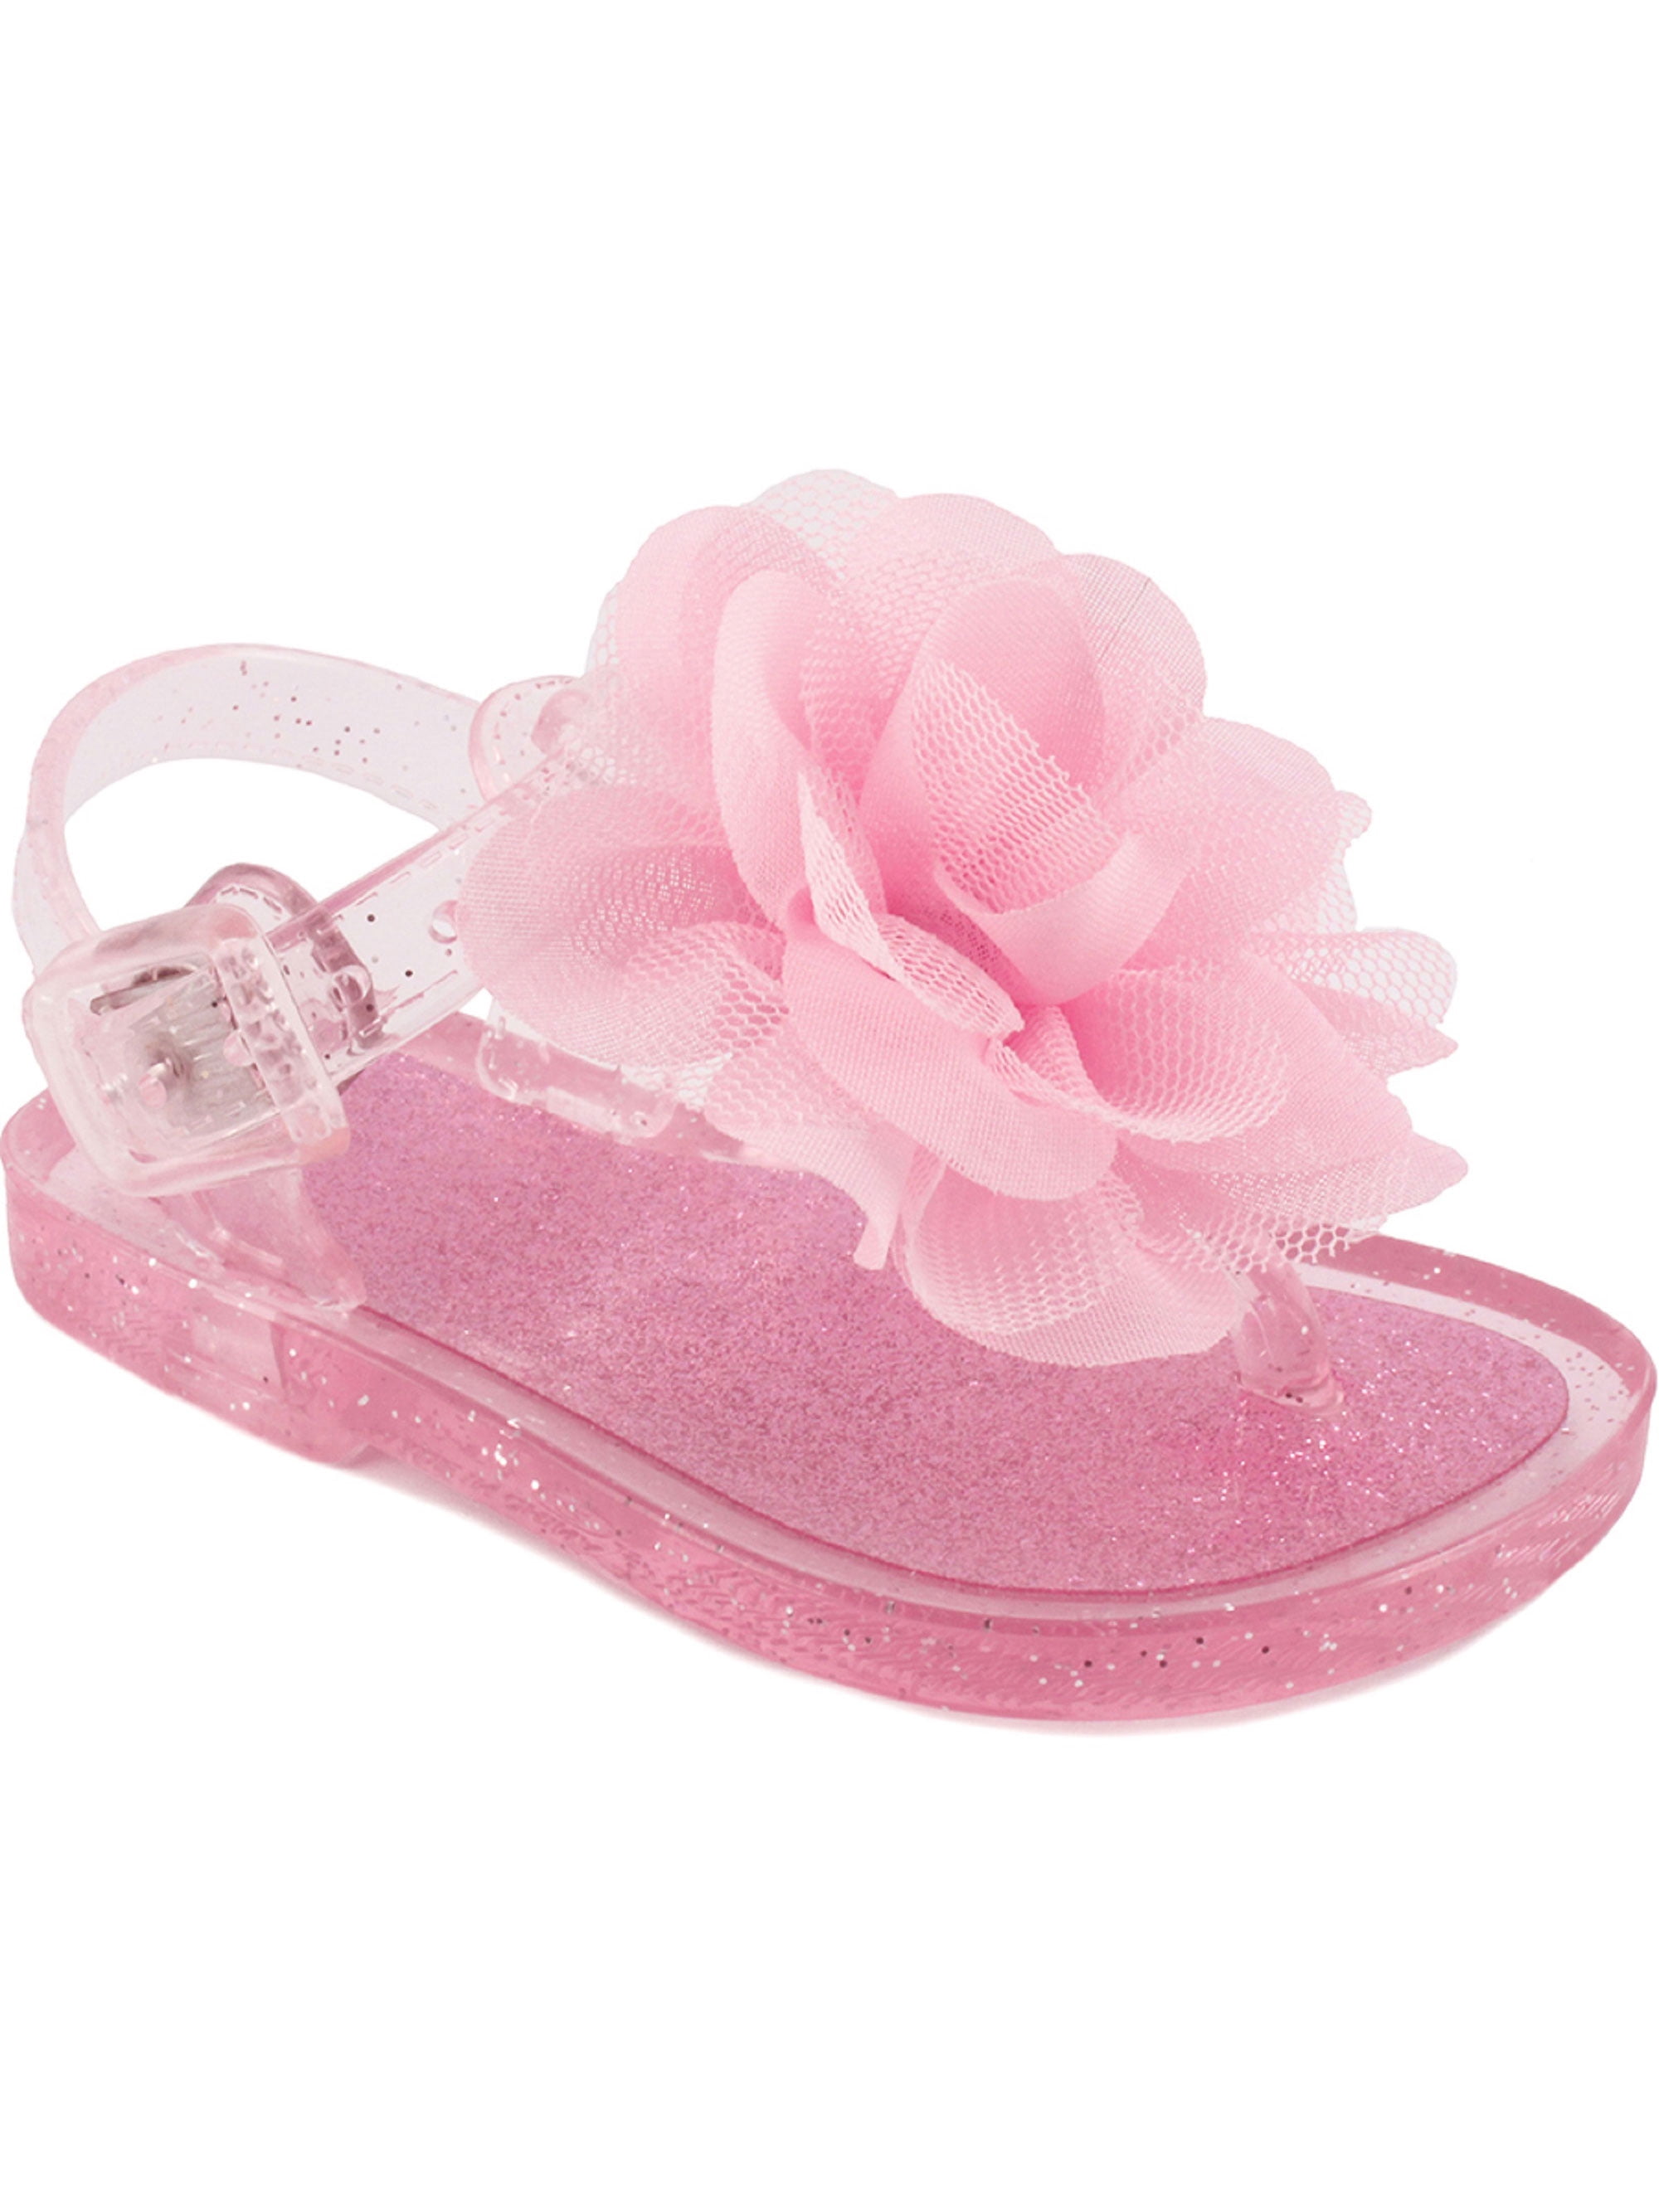 light sandals for baby girl